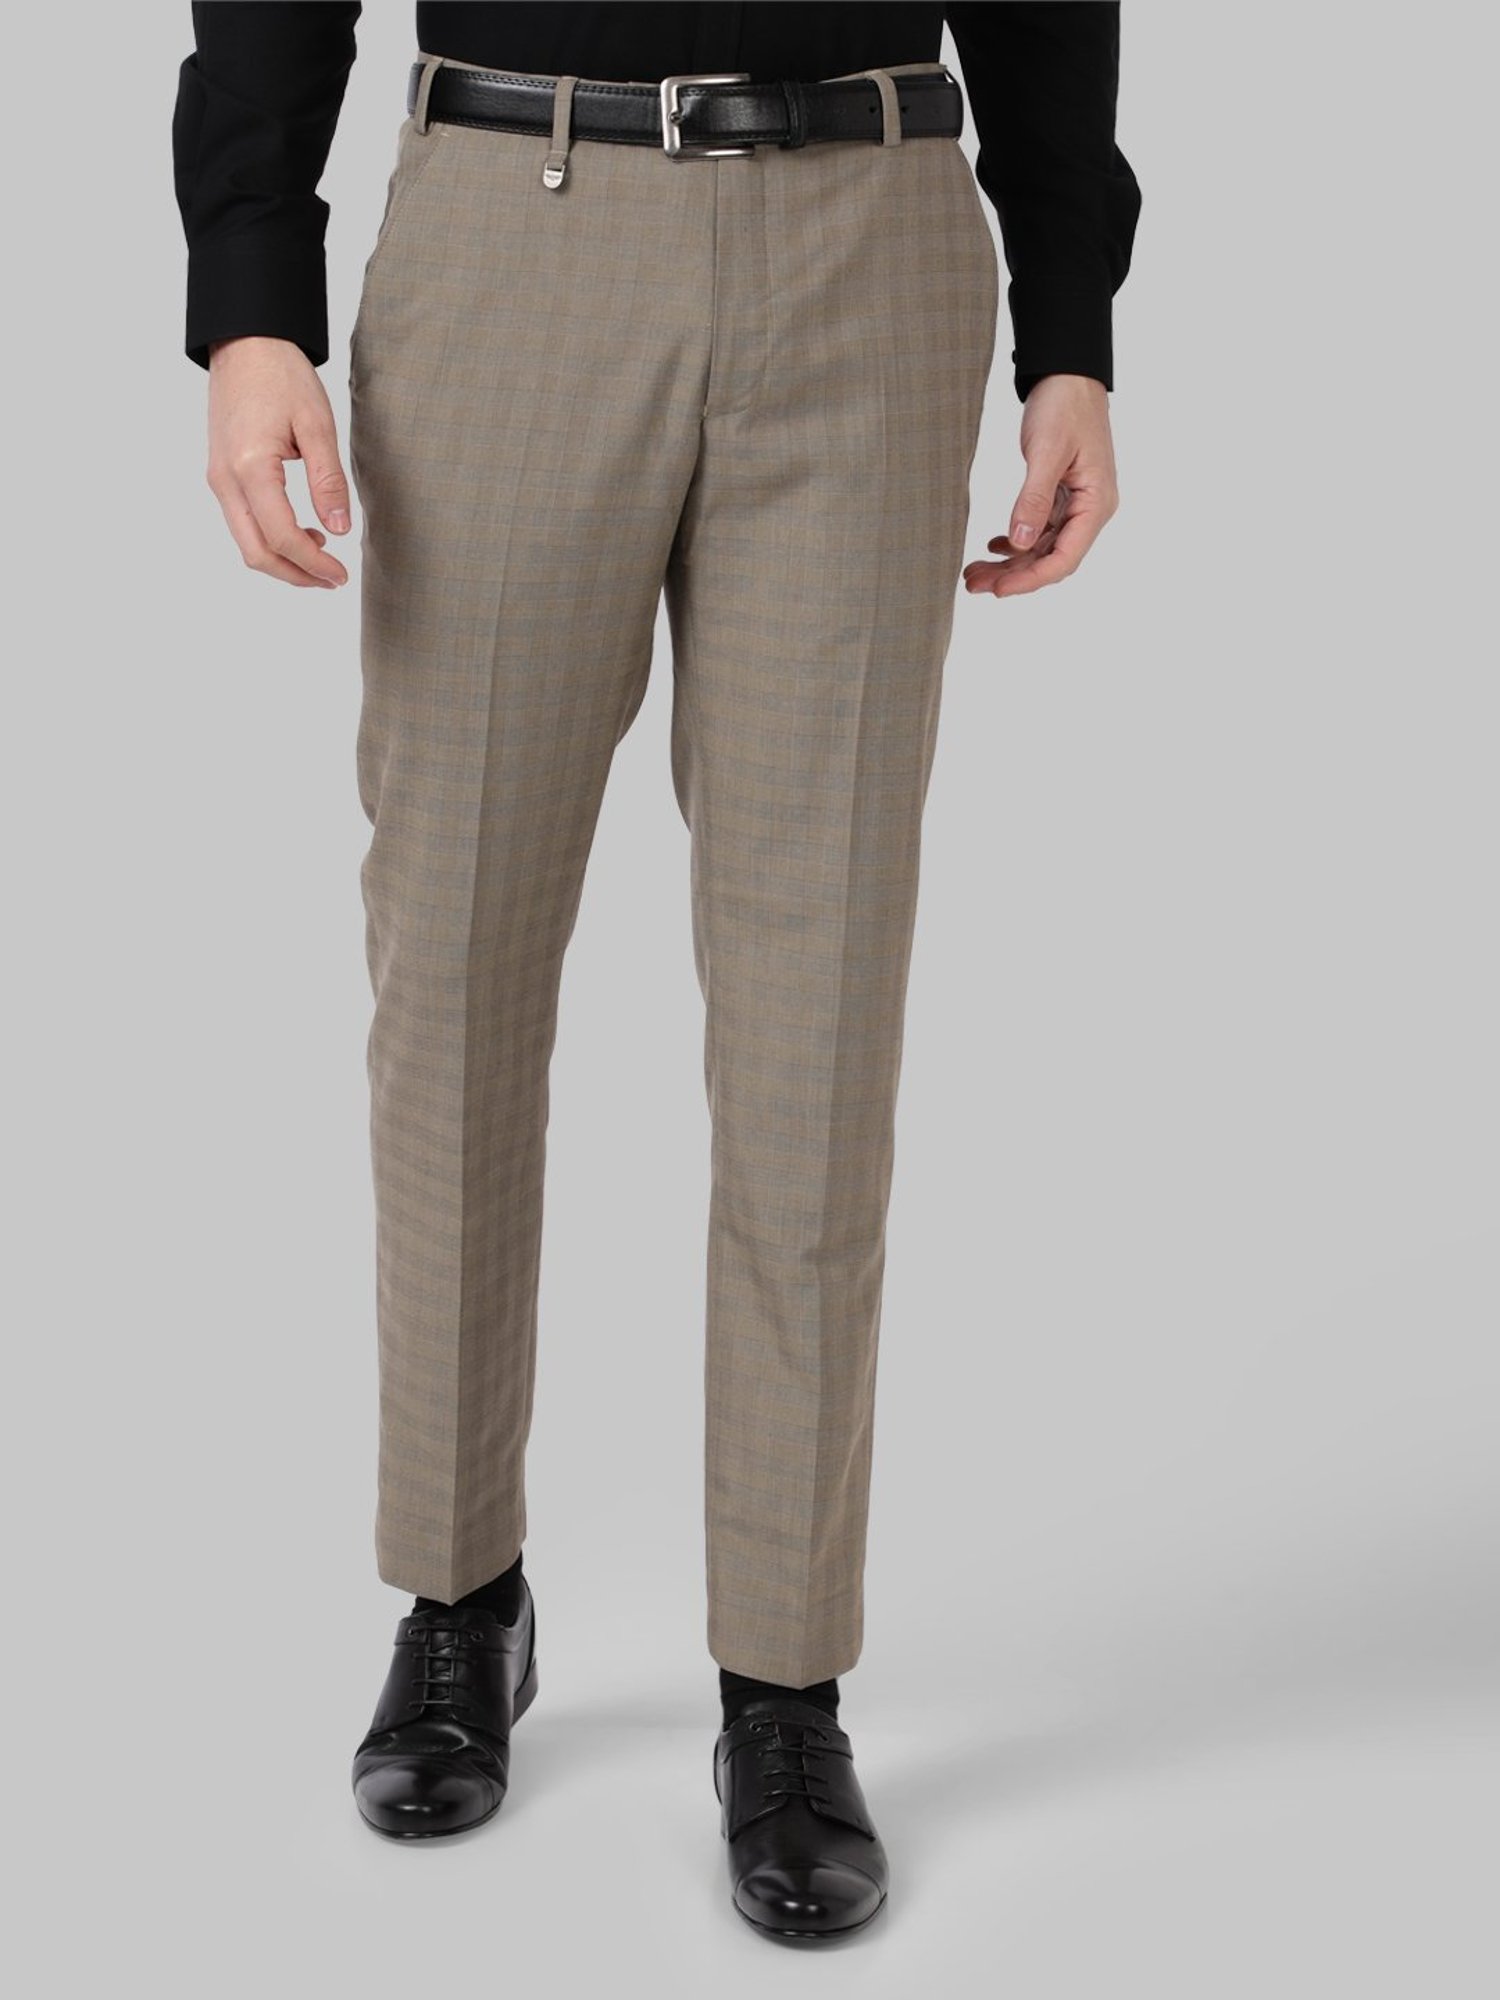 Buy Men Olive Green Super Slim Fit Formal Trousers online  Looksgudin